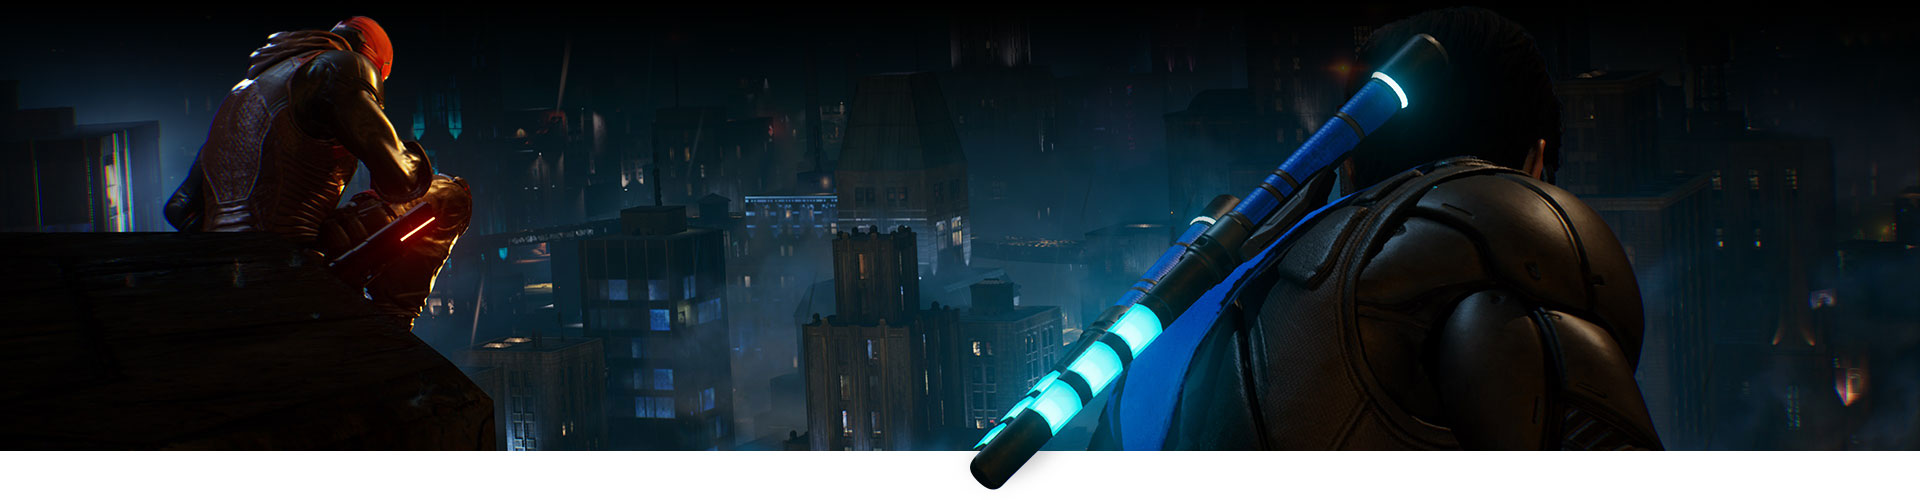 Red Hood y Nightwing se sientan en una azotea, mirando la ciudad.